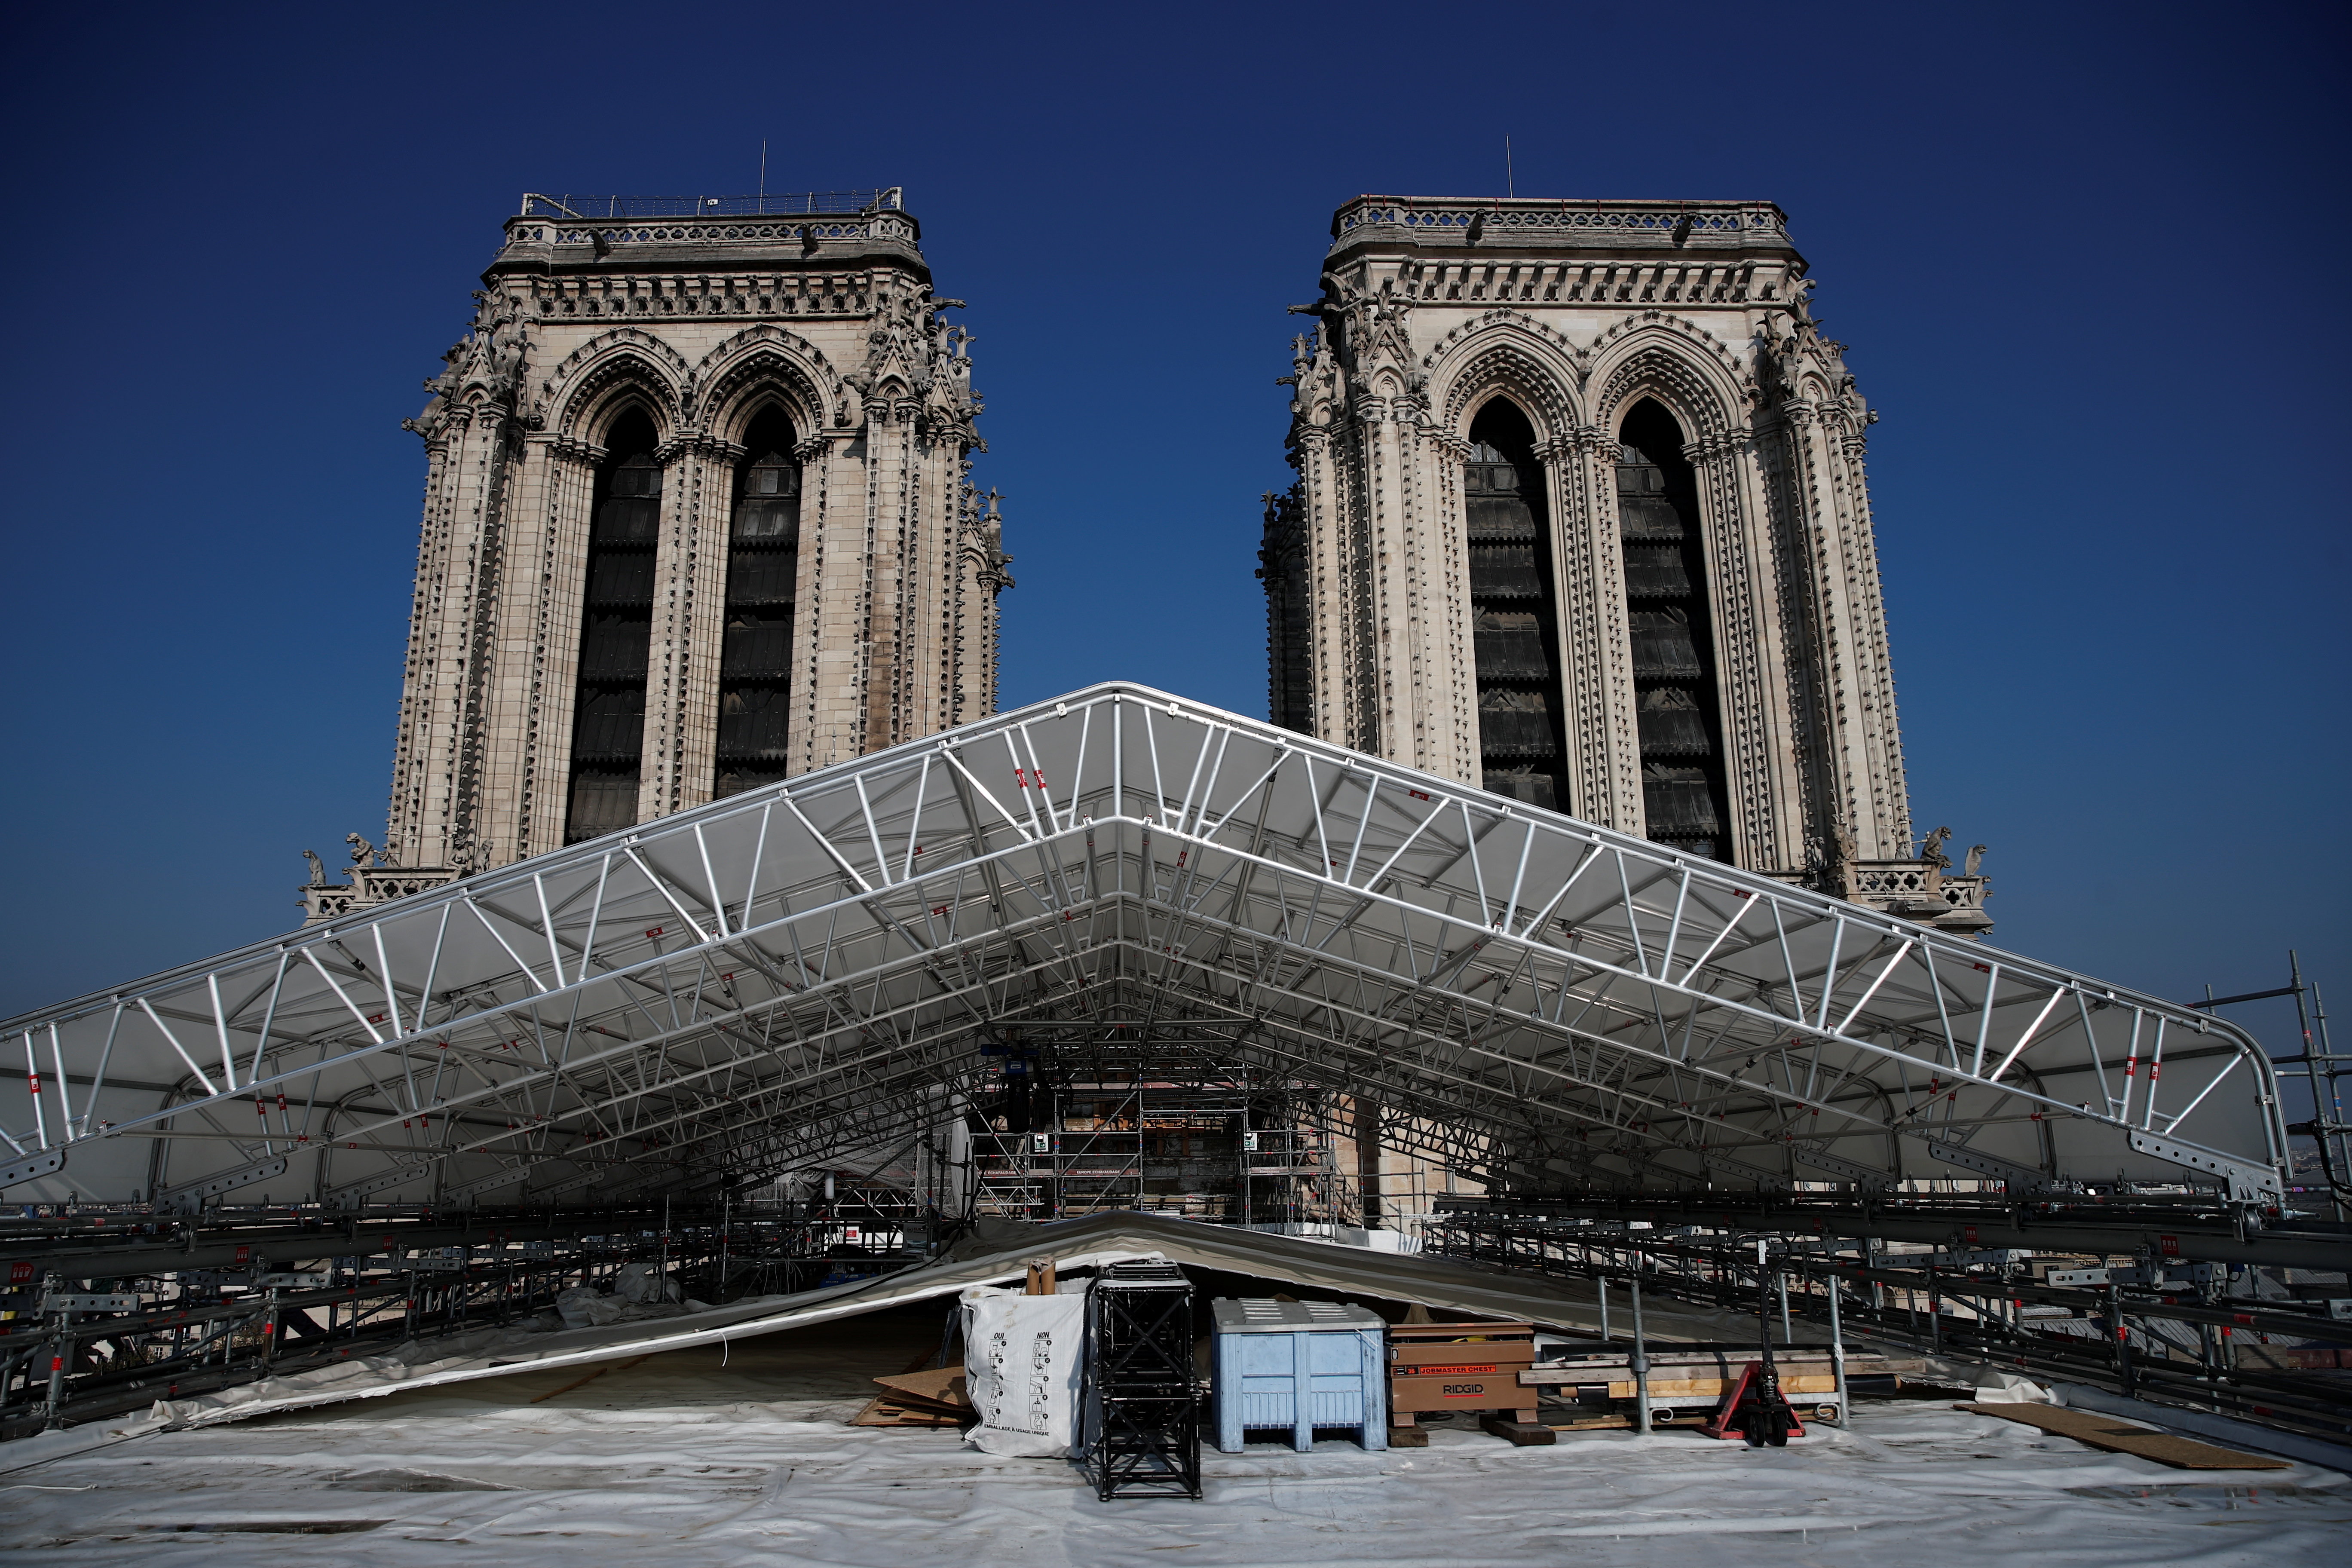 Ma két éve, hogy leégett a párizsi Notre-Dame, így néz ki most - fotók -  Blikk